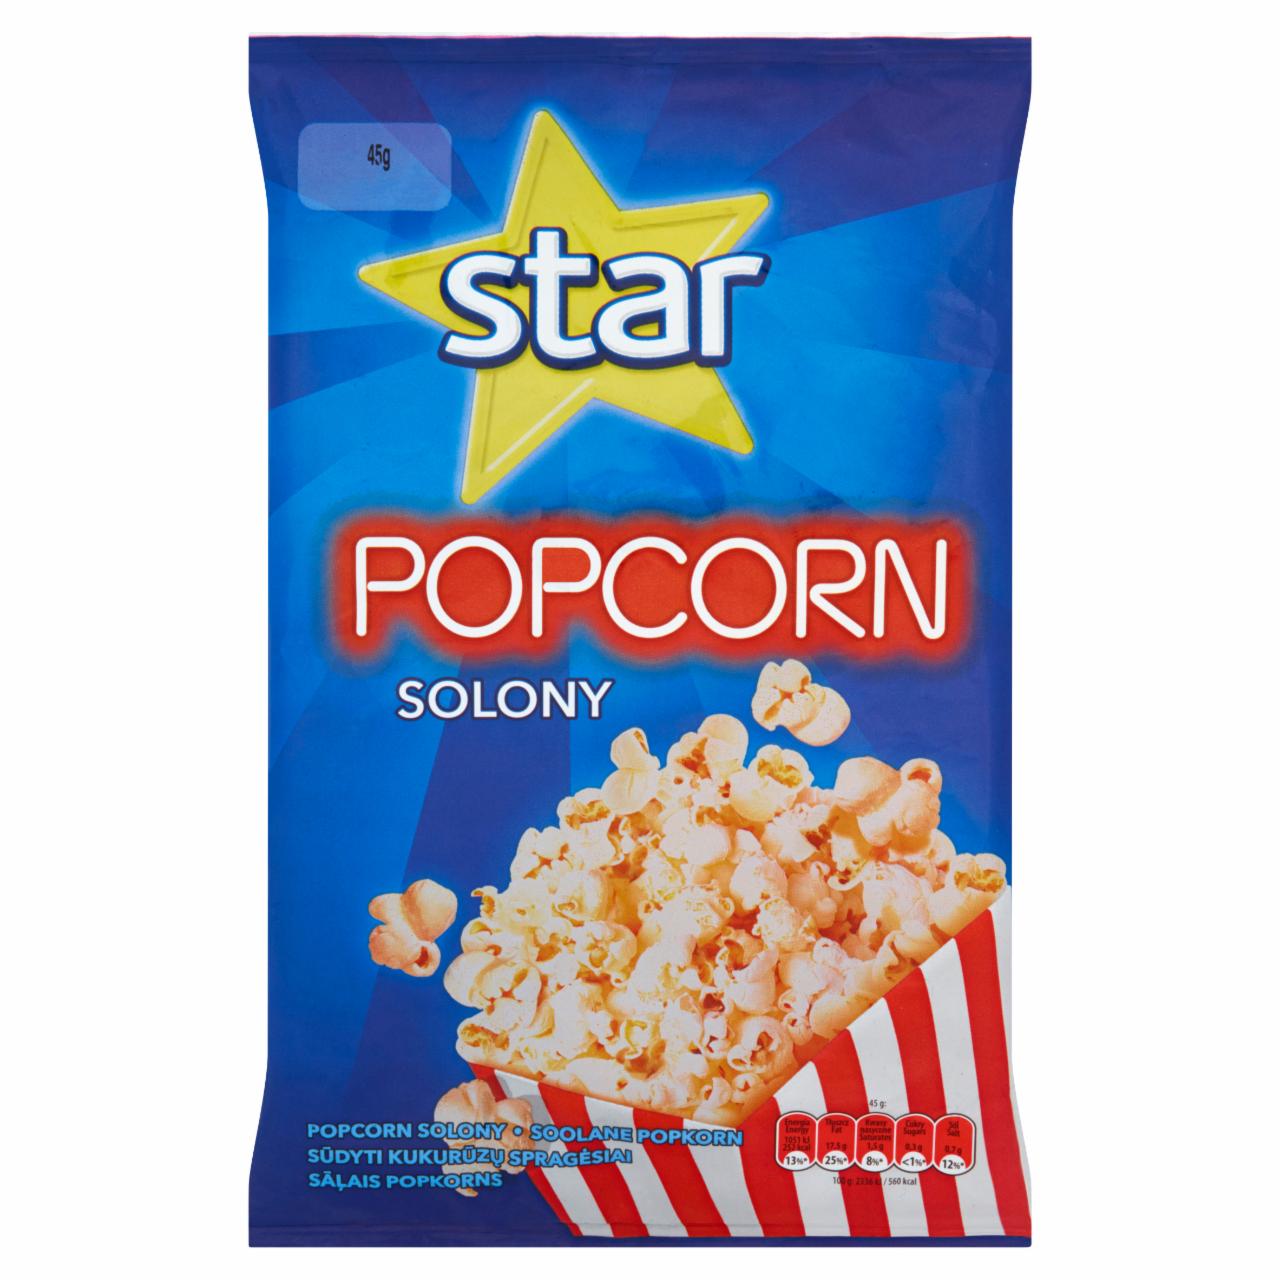 Zdjęcia - Star Popcorn solony 45 g